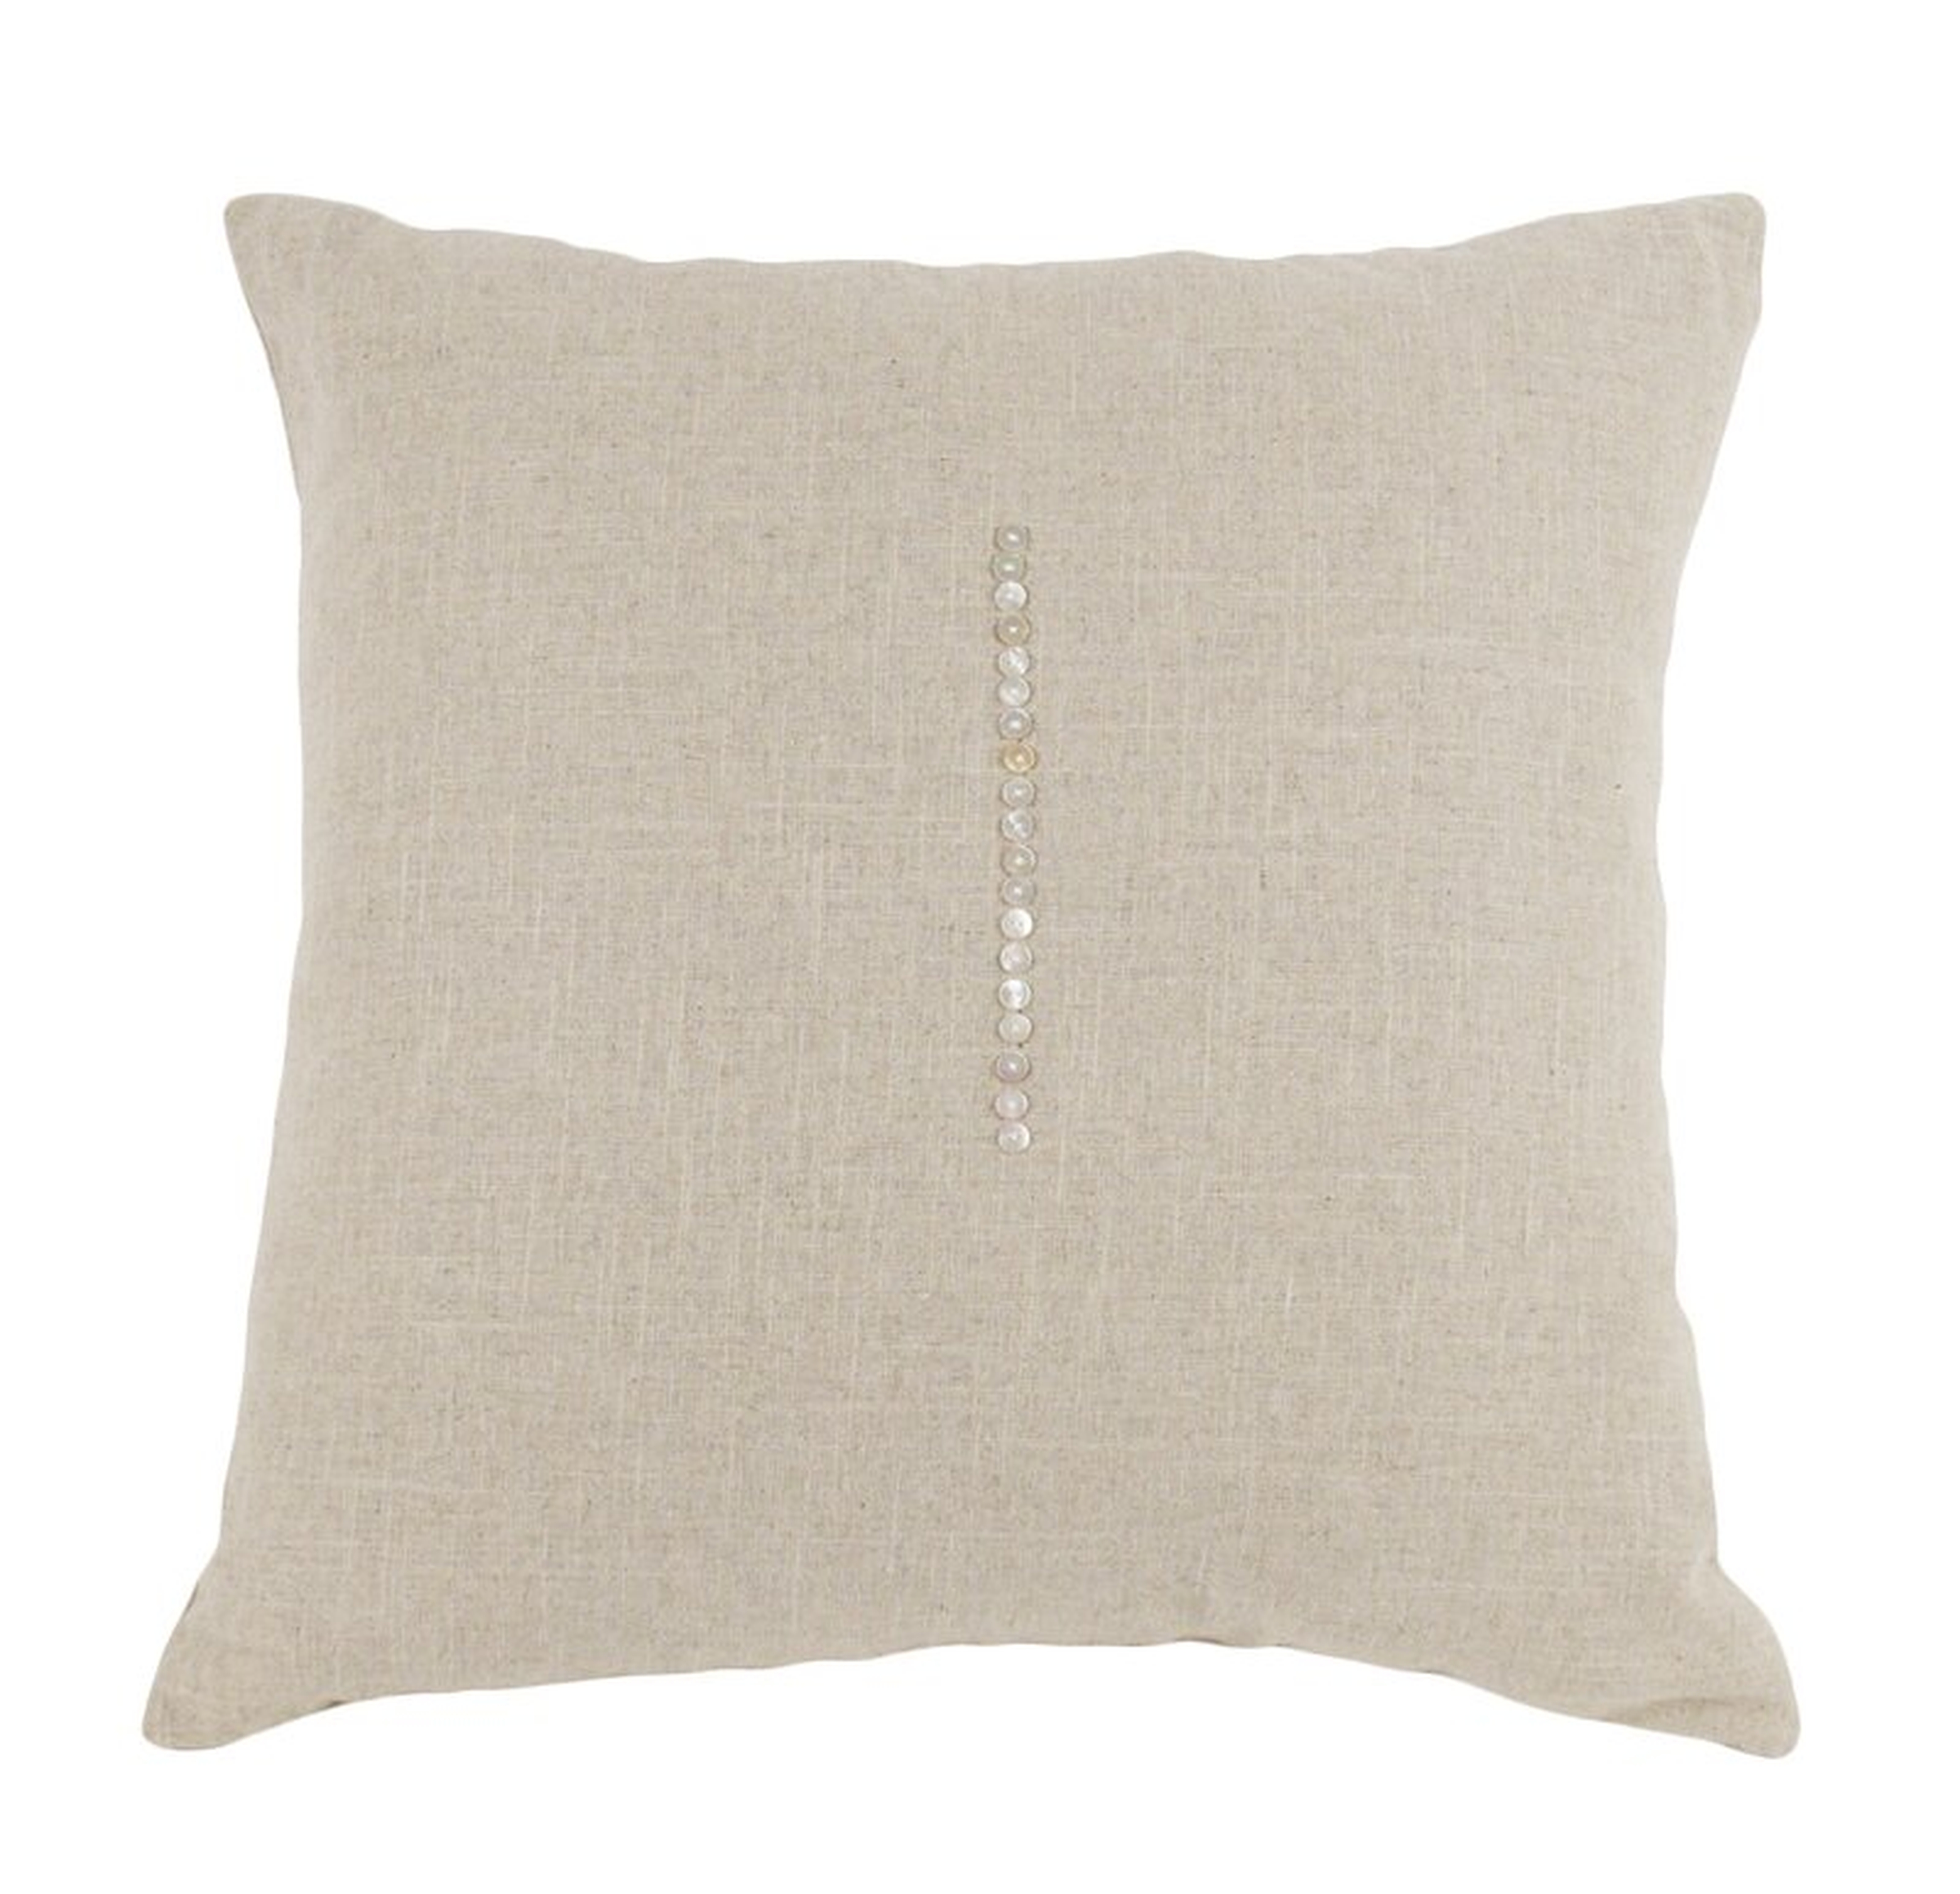 Zentique Linen Throw Pillow Size: 24" H x 24" W x 3" D, Color: Natural - Perigold